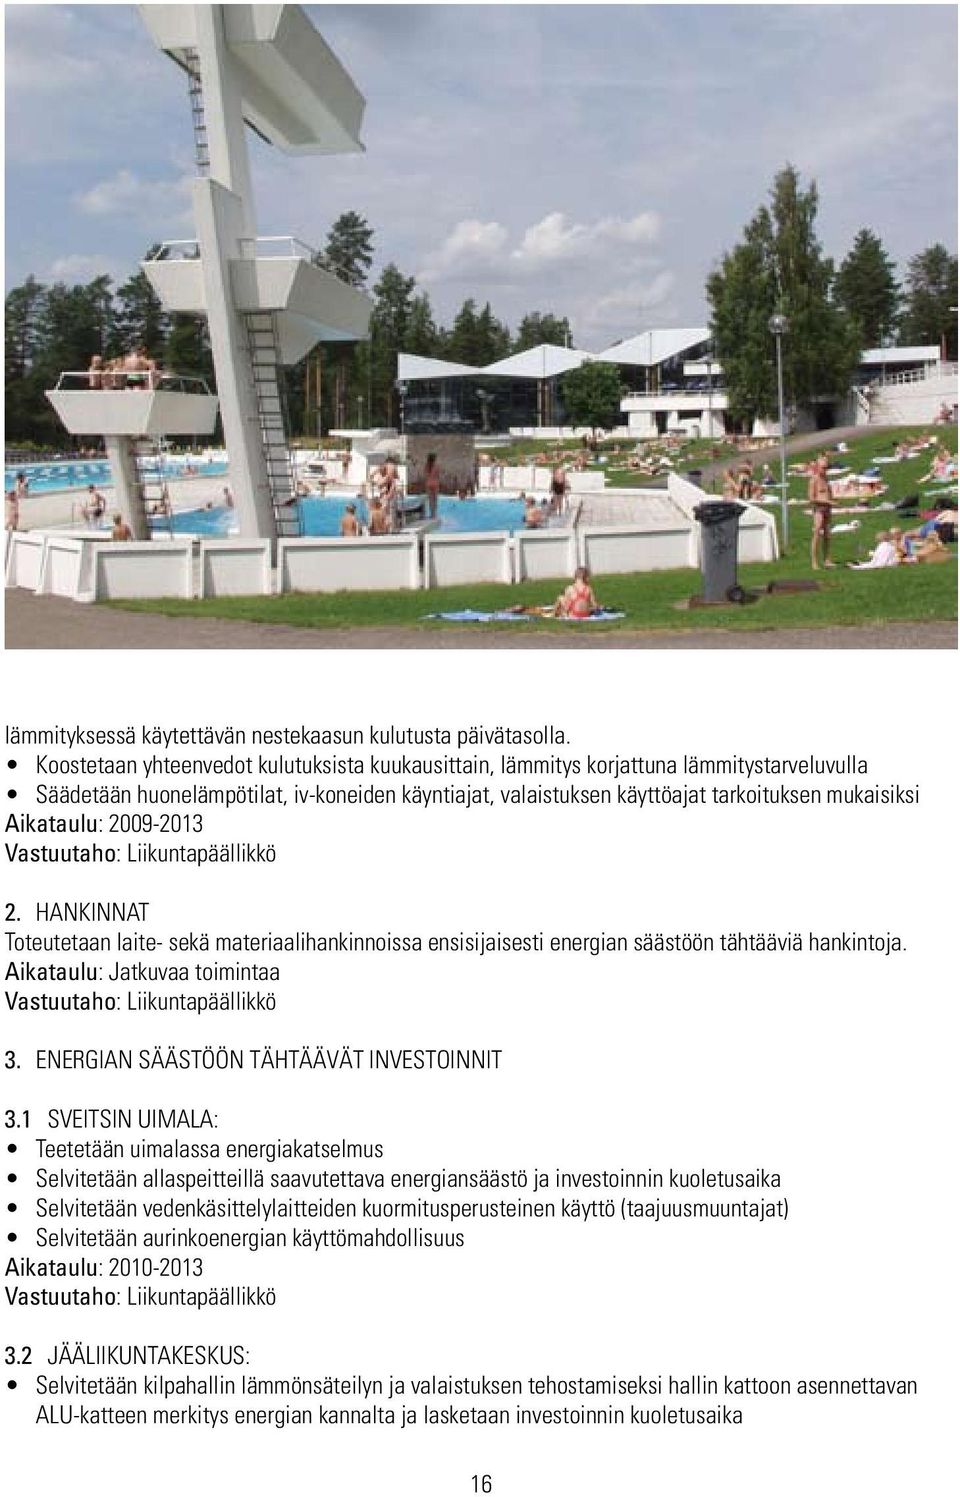 Aikataulu: 2009-2013 Vastuutaho: Liikuntapäällikkö 2. HANKINNAT Toteutetaan laite- sekä materiaalihankinnoissa ensisijaisesti energian säästöön tähtääviä hankintoja.